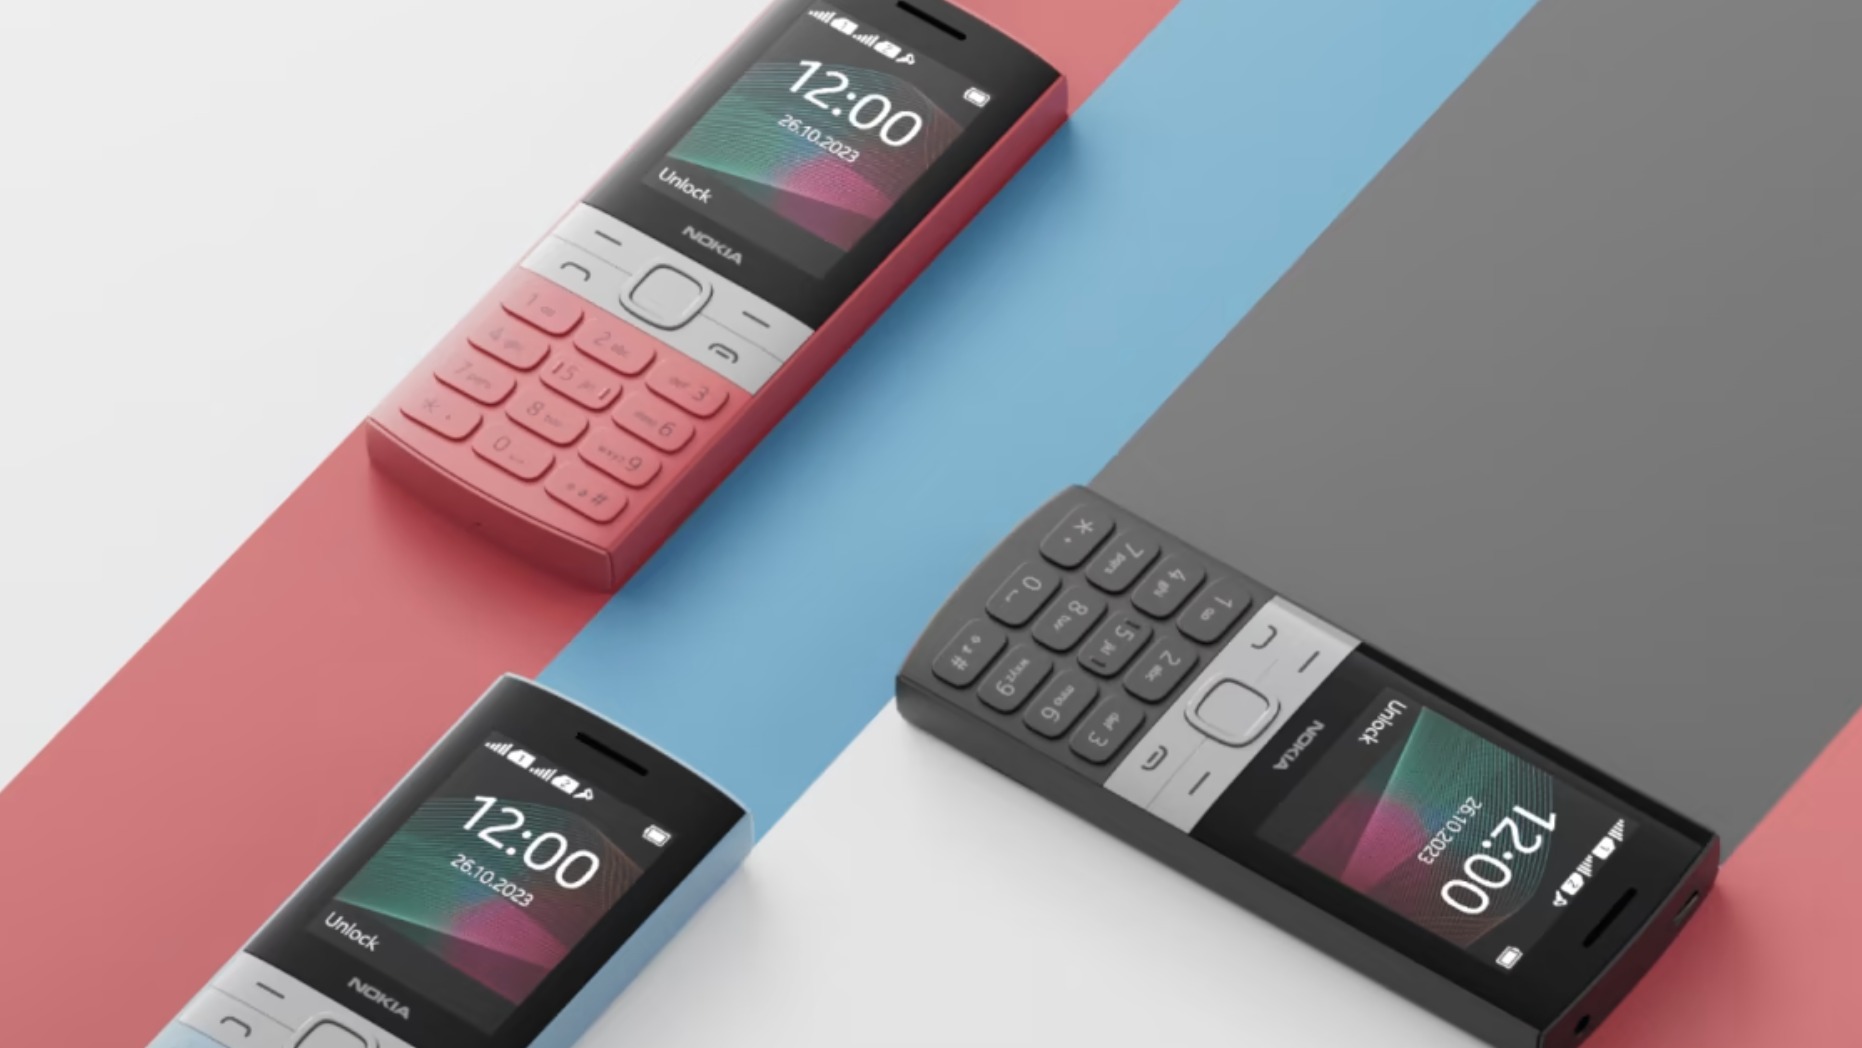 Nokia 150 in three different colorways, on beige background